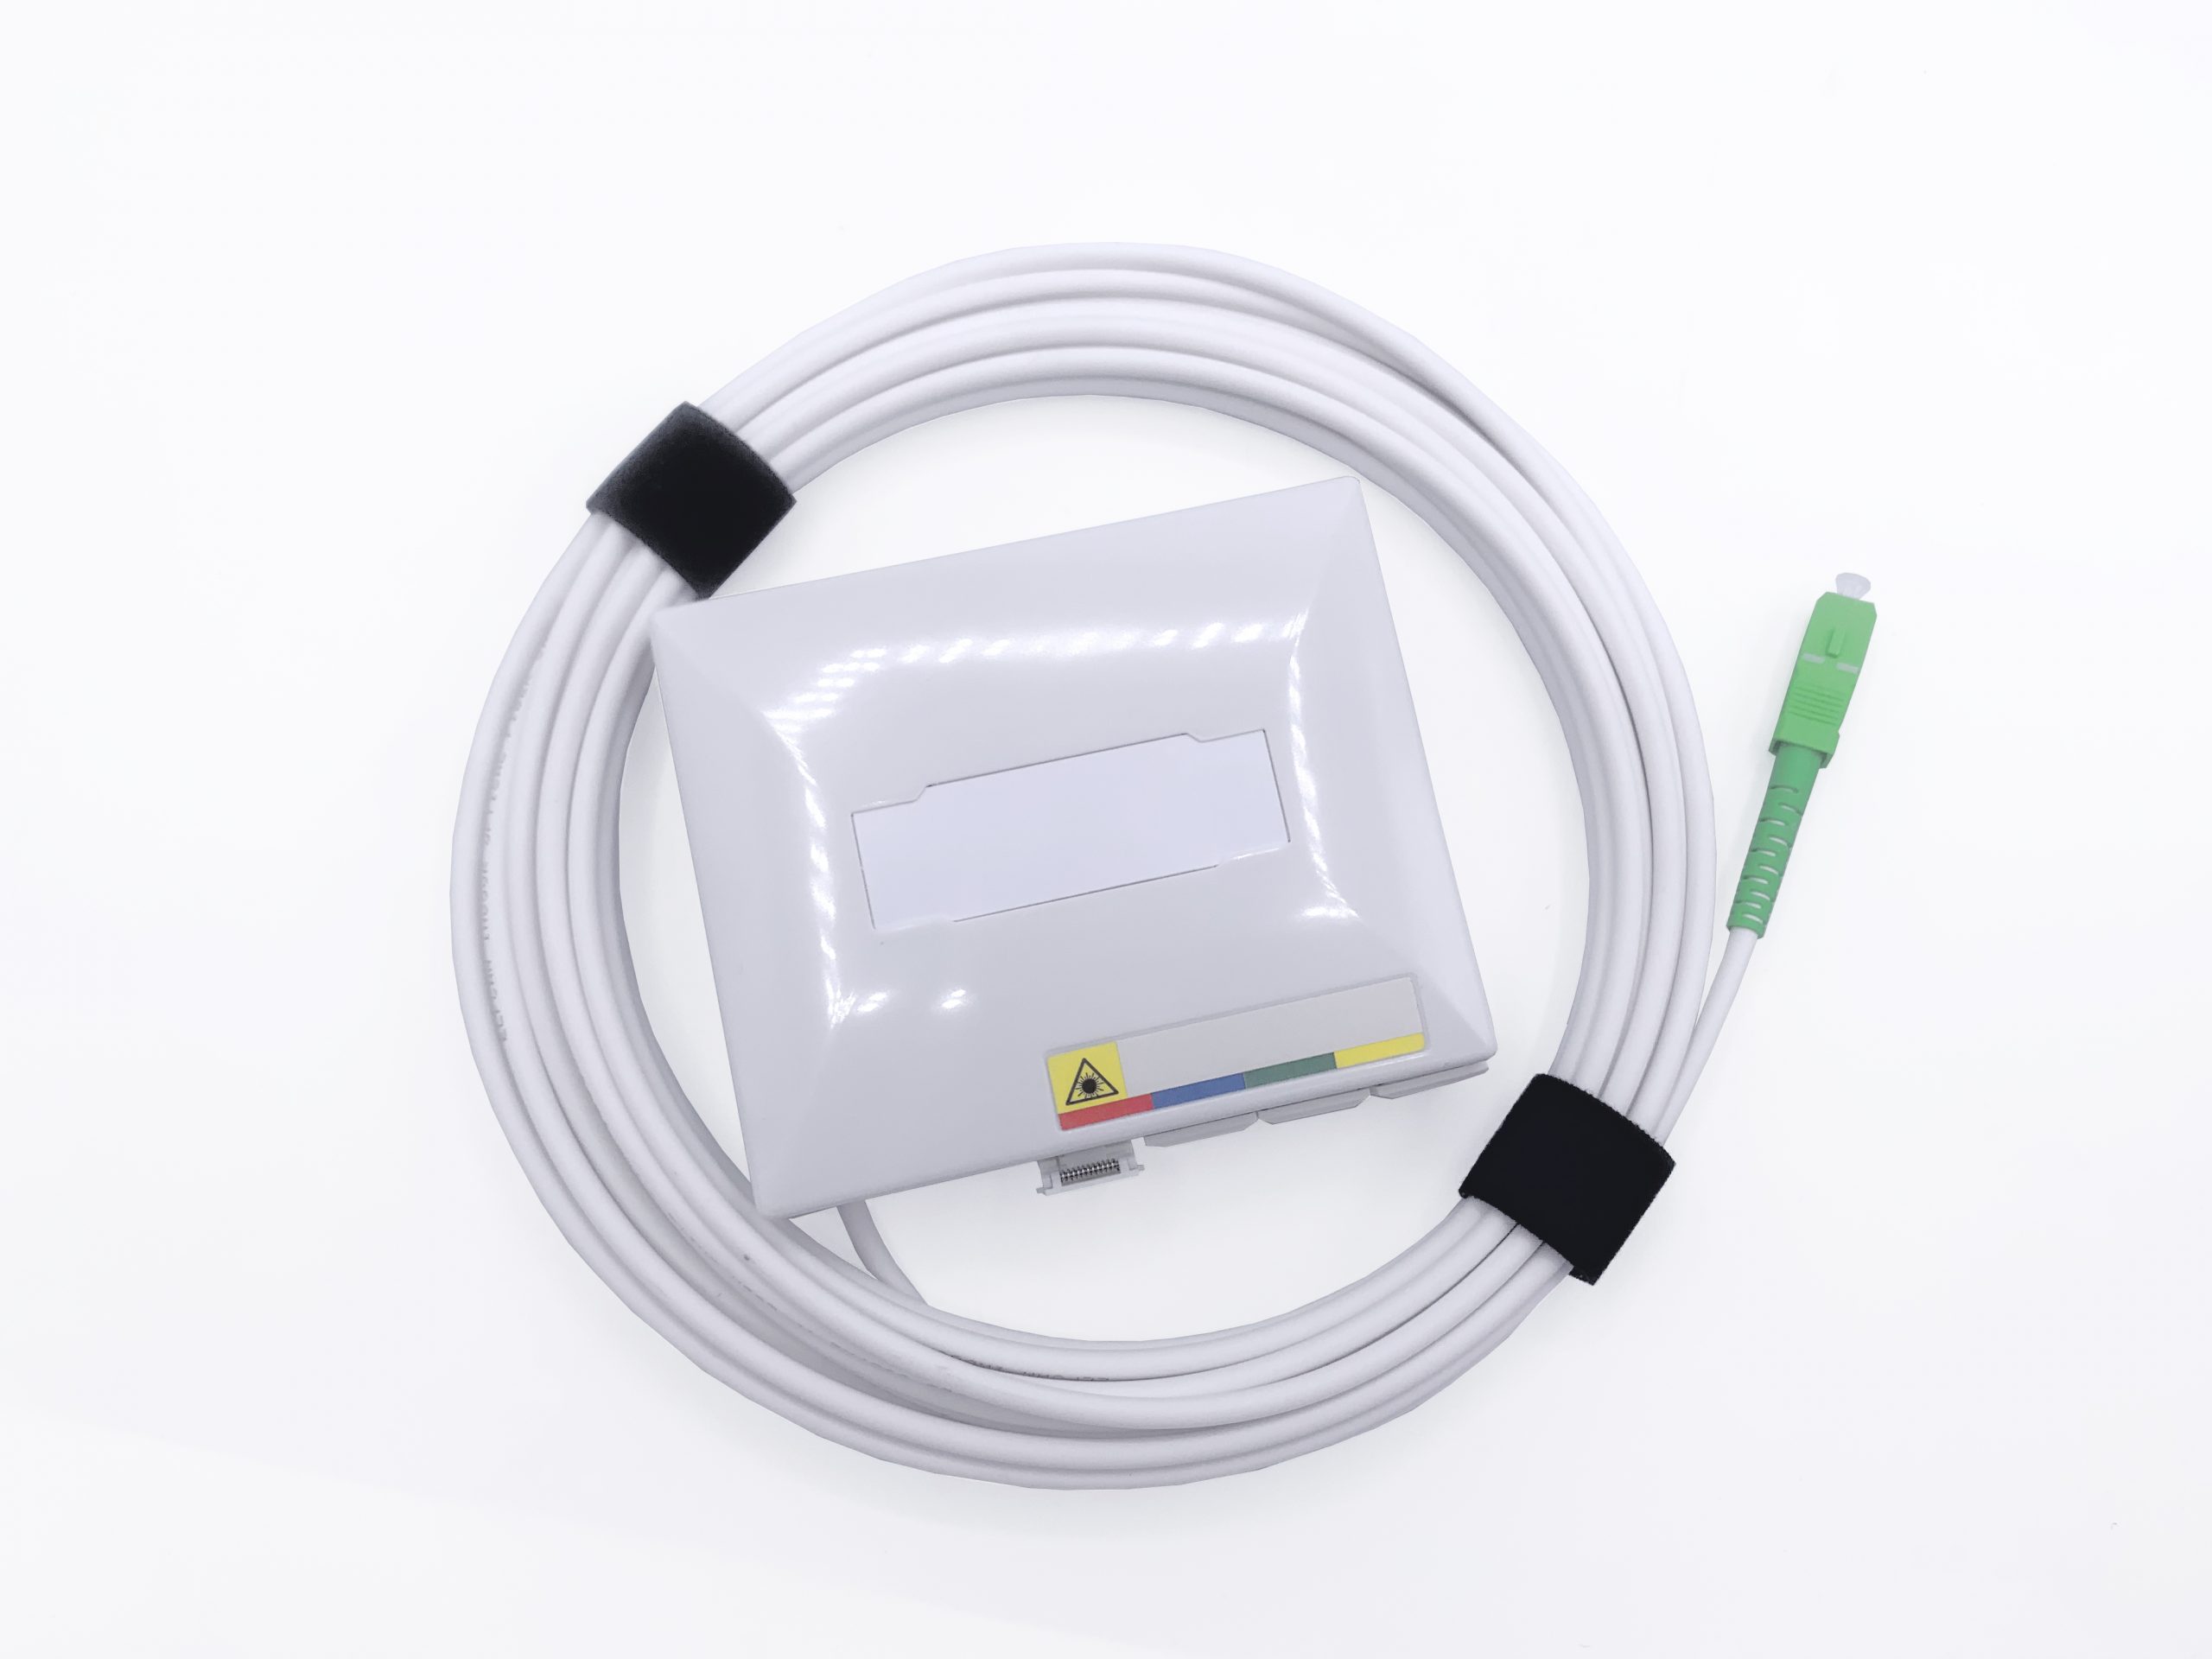 Cable Fibre Optique equipé d'une PTO pour box fibre - FOLAN